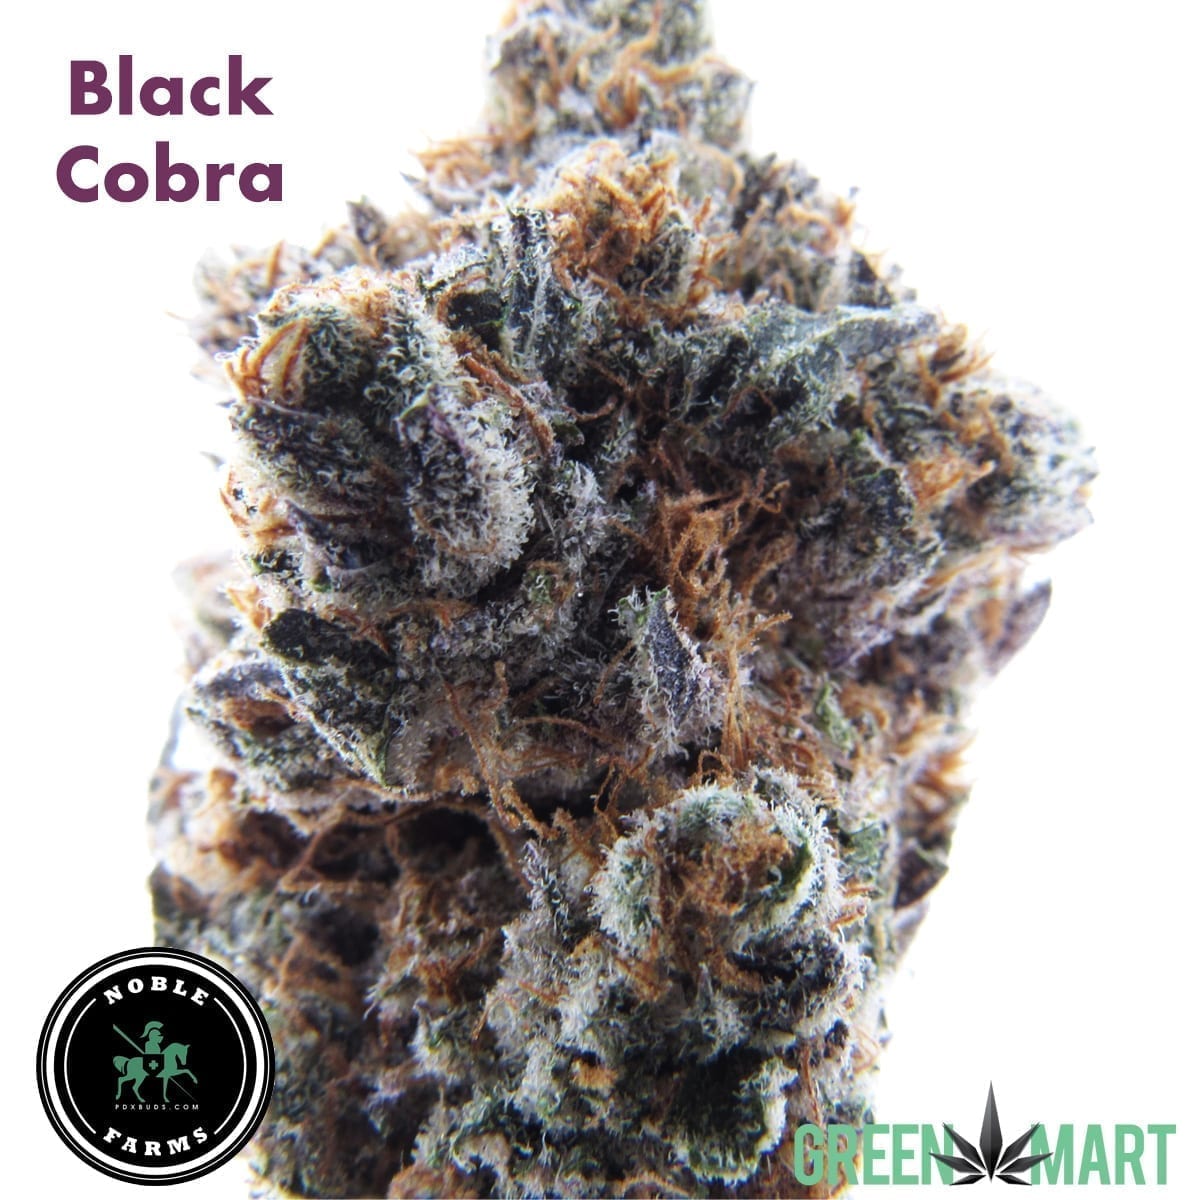 Black Cobra by Noble Farms